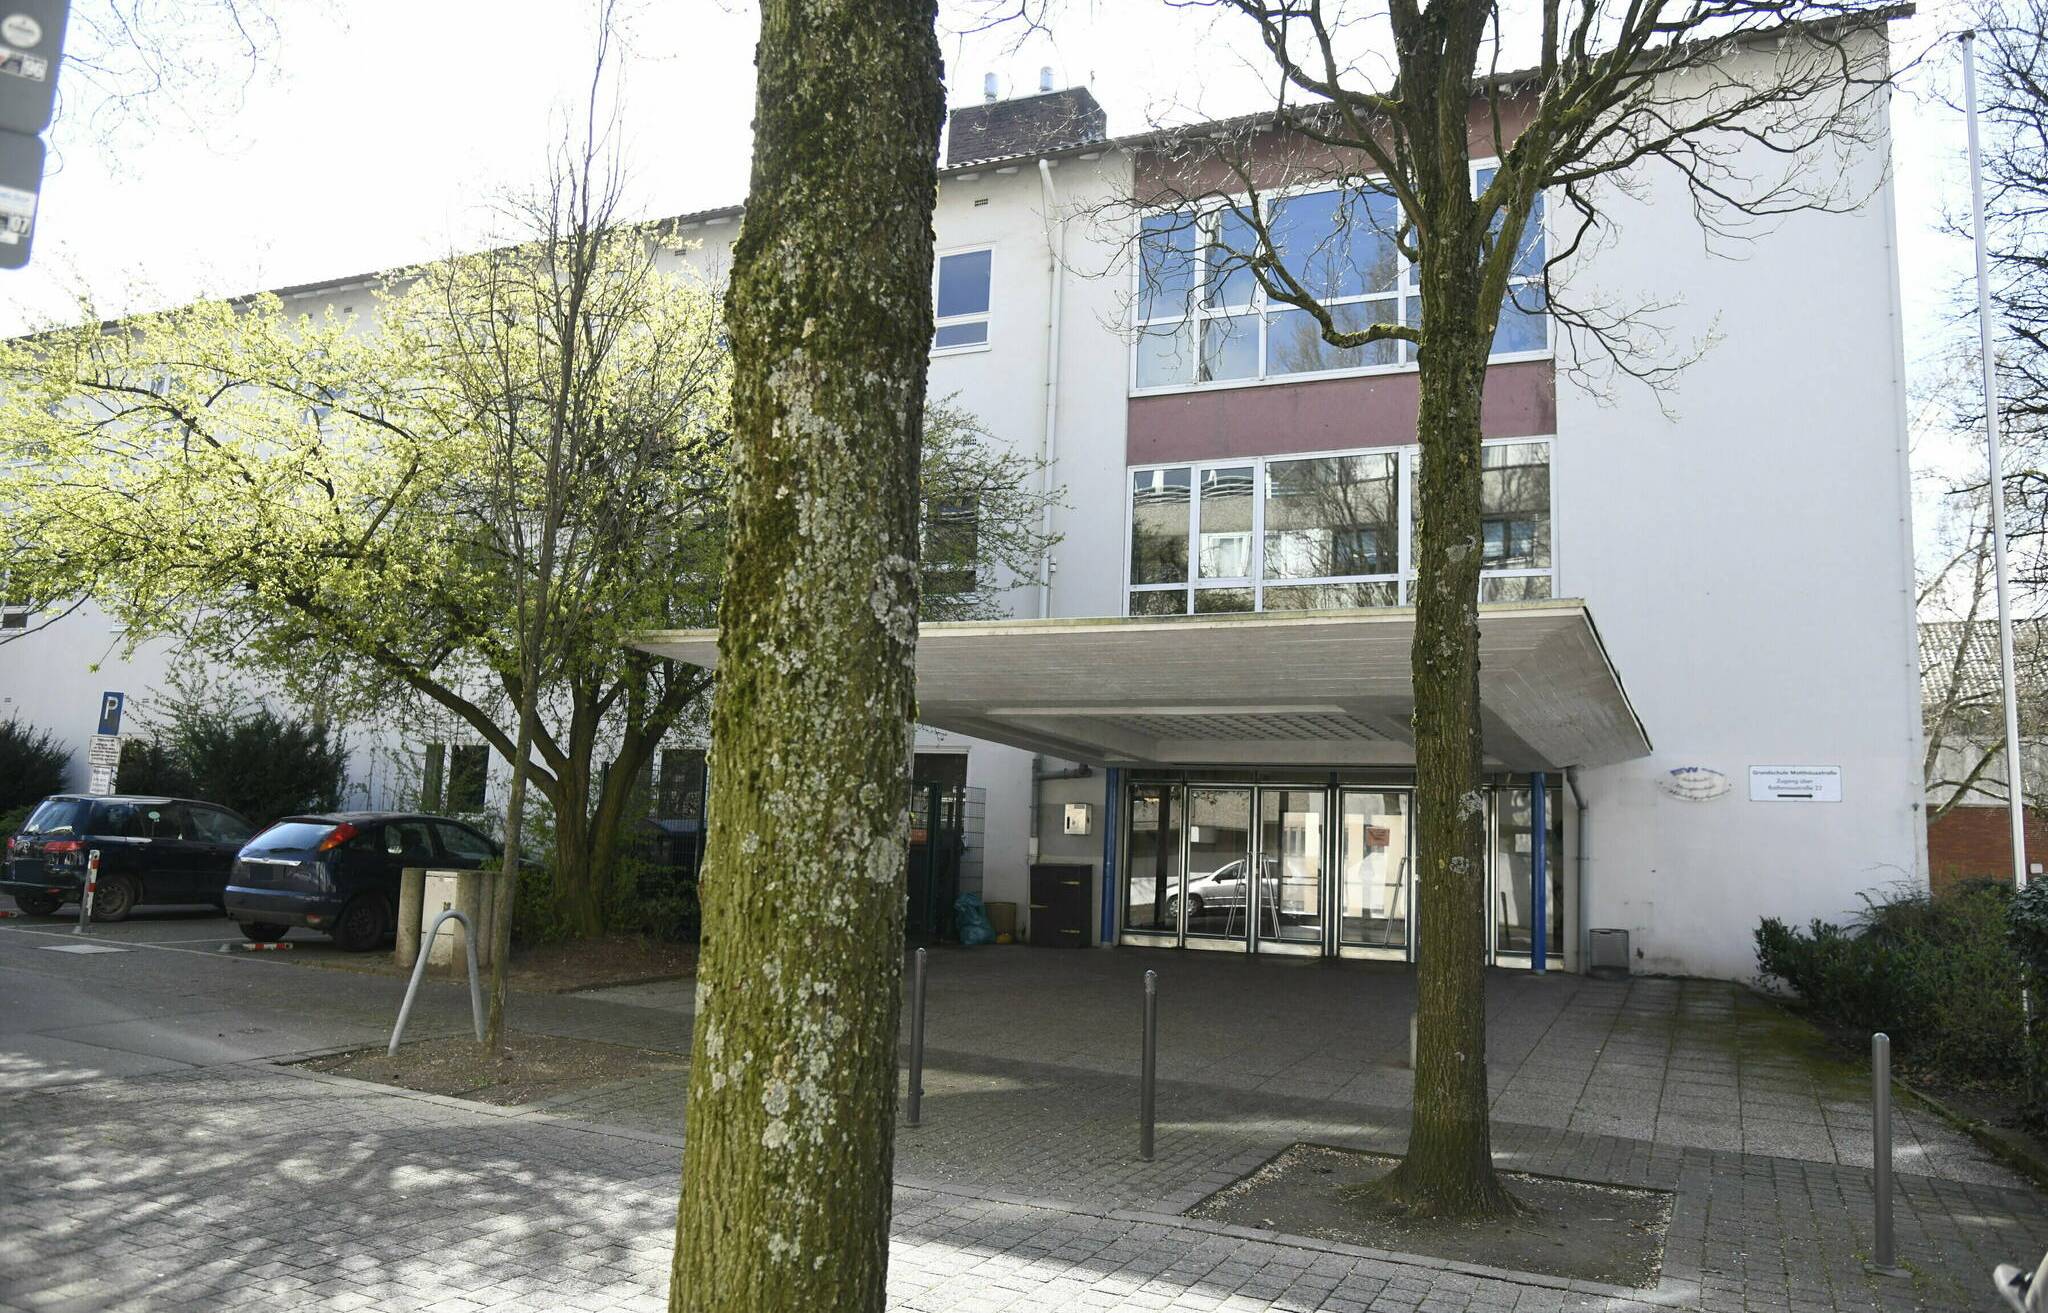  Die Hauptschule Wichlinghausen soll nach Langerfeld umziehen. 